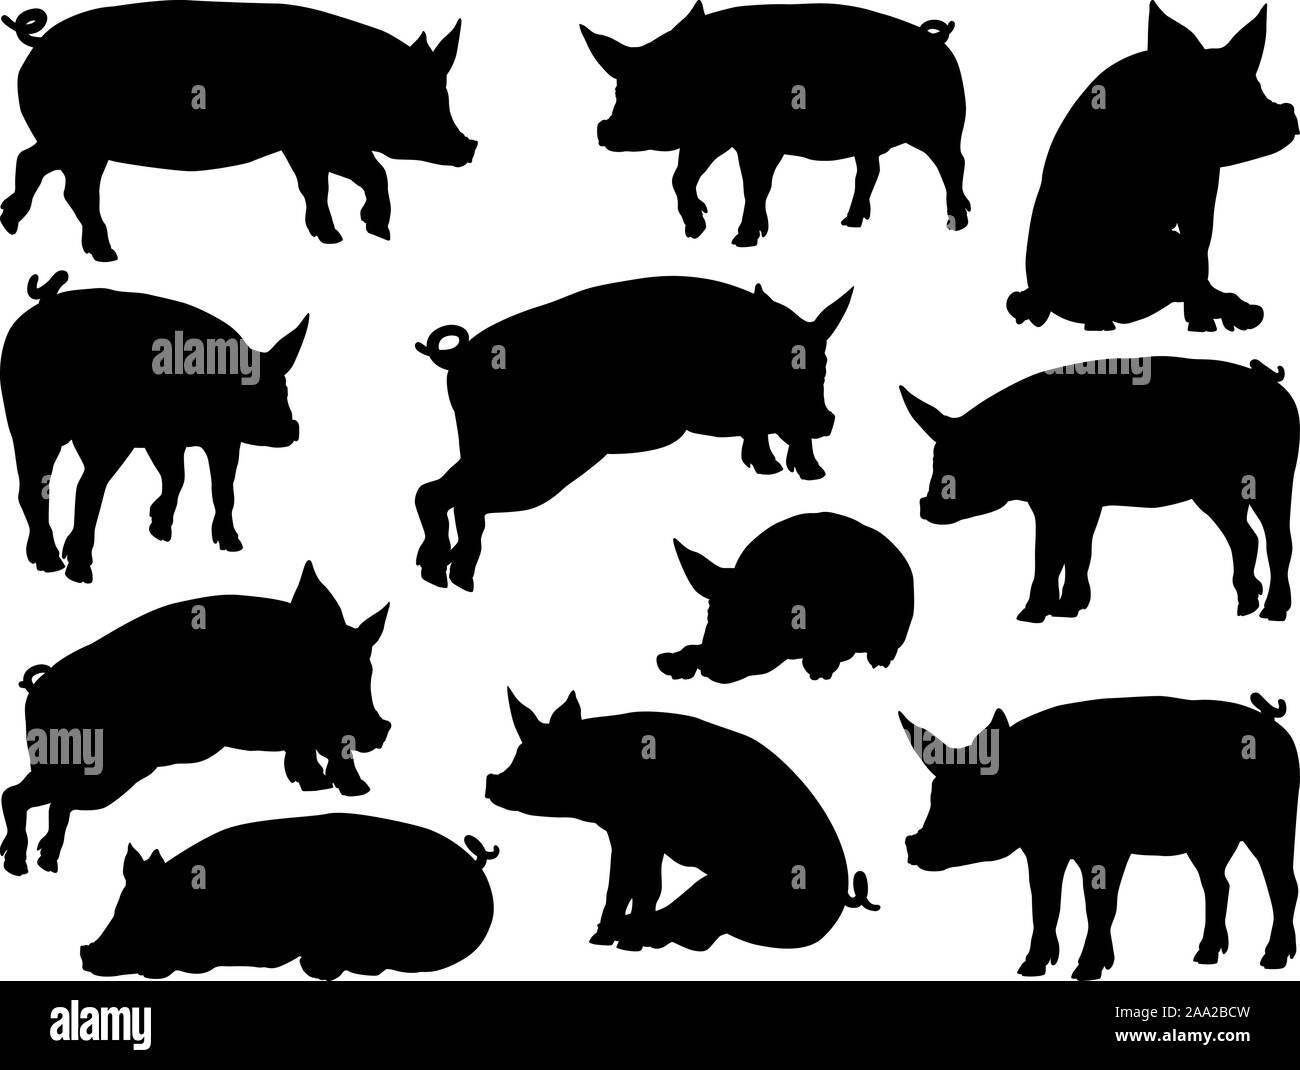 Schwein Silhouetten Farm Animal eingestellt Stock Vektor